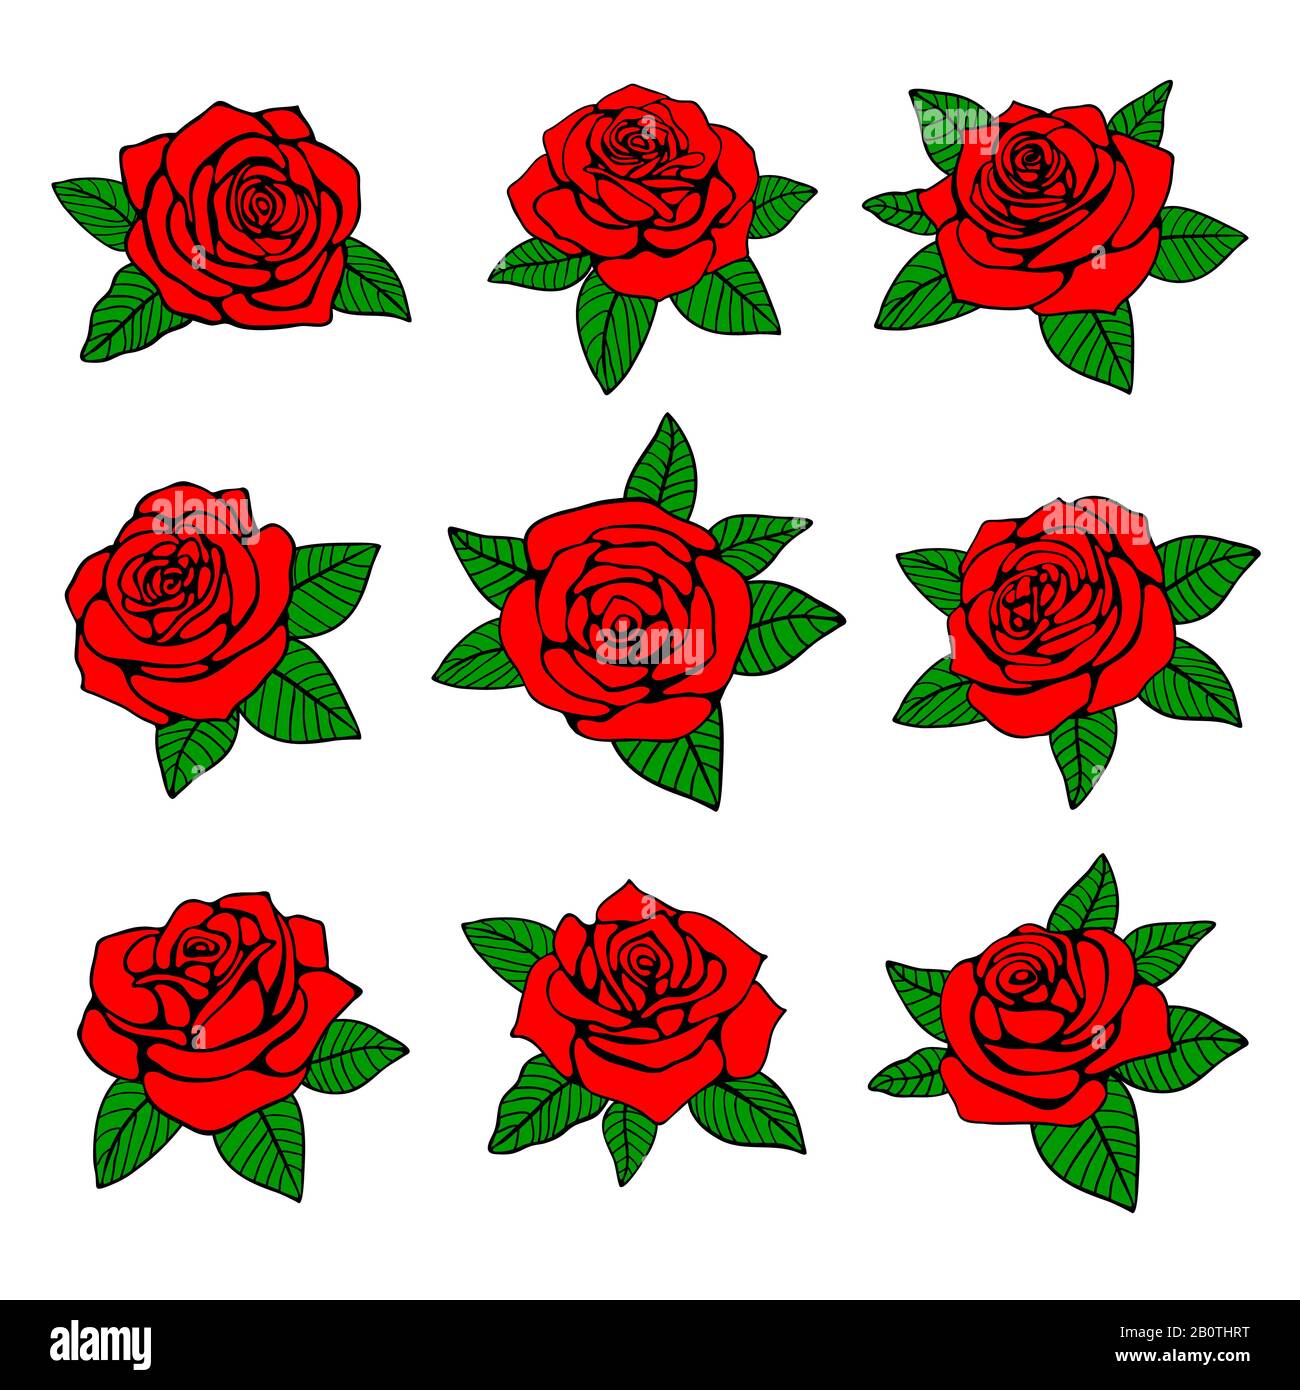 Roses rouges avec feuilles vertes motif vectoriel pour tatouage. Rose rouge nature, avec feuille verte, illustration du tatouage de rose Illustration de Vecteur